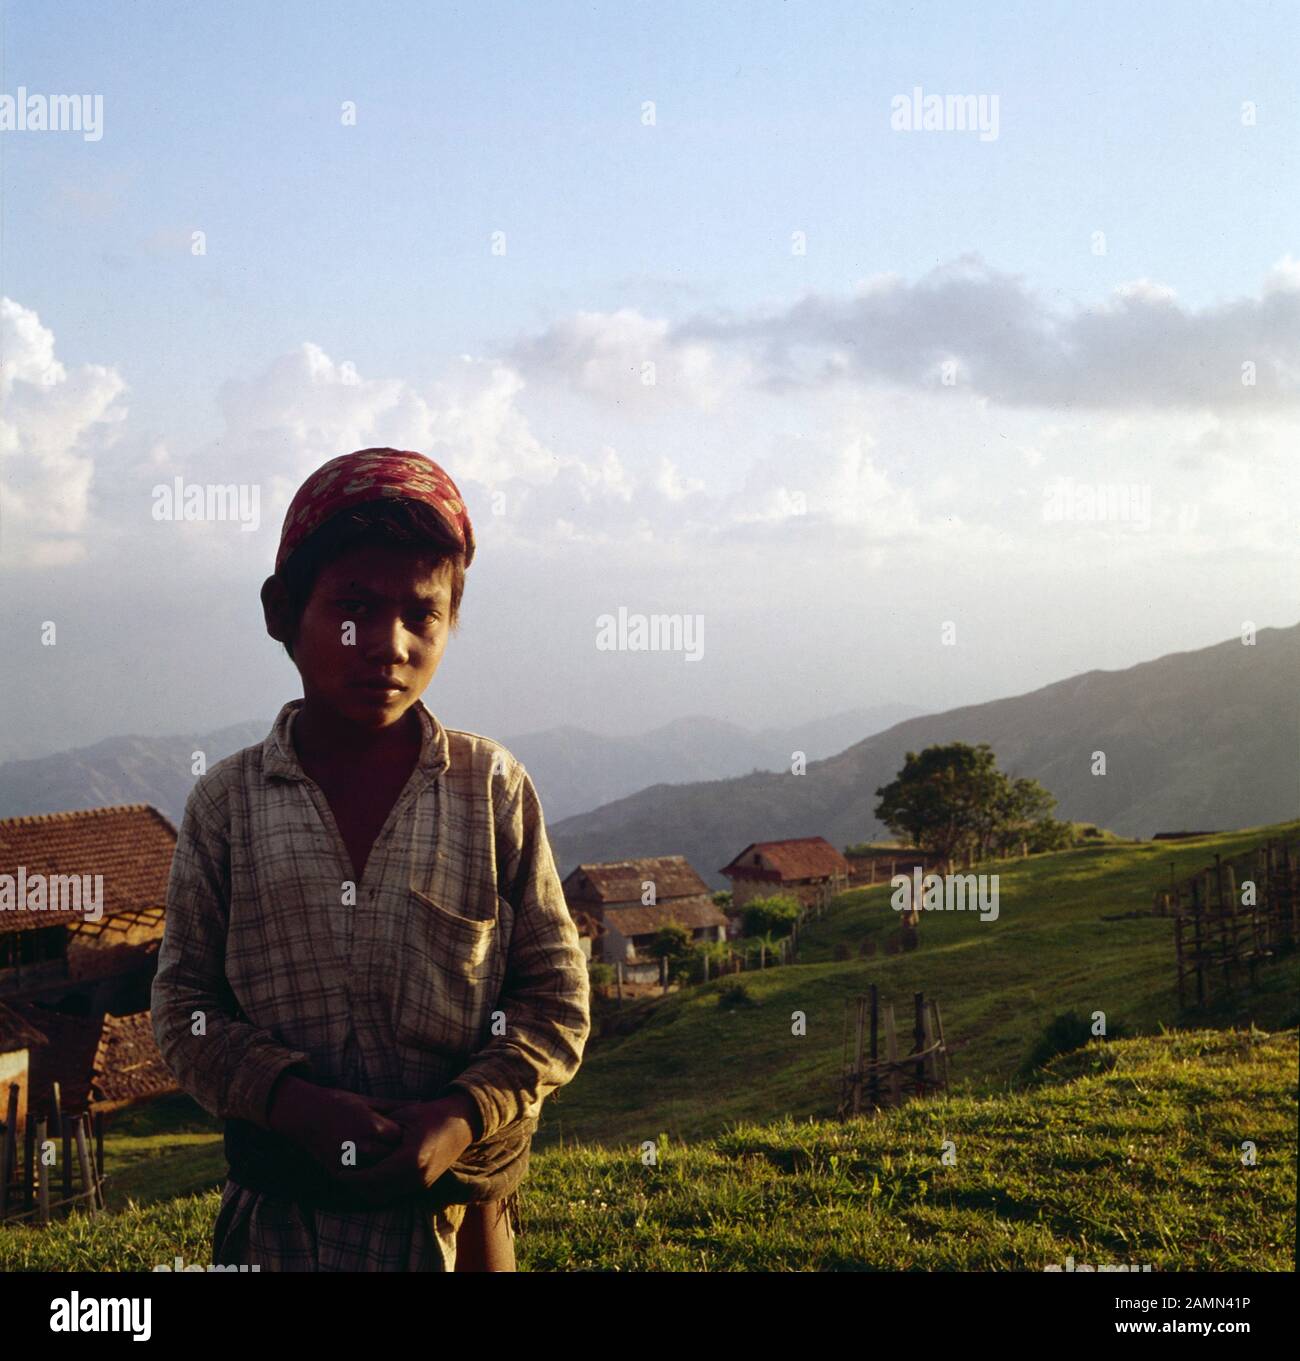 Junge im Hochland von Nepal, 1980er Jahre. Boy in the Nepalese highlands, 1980s. Stock Photo